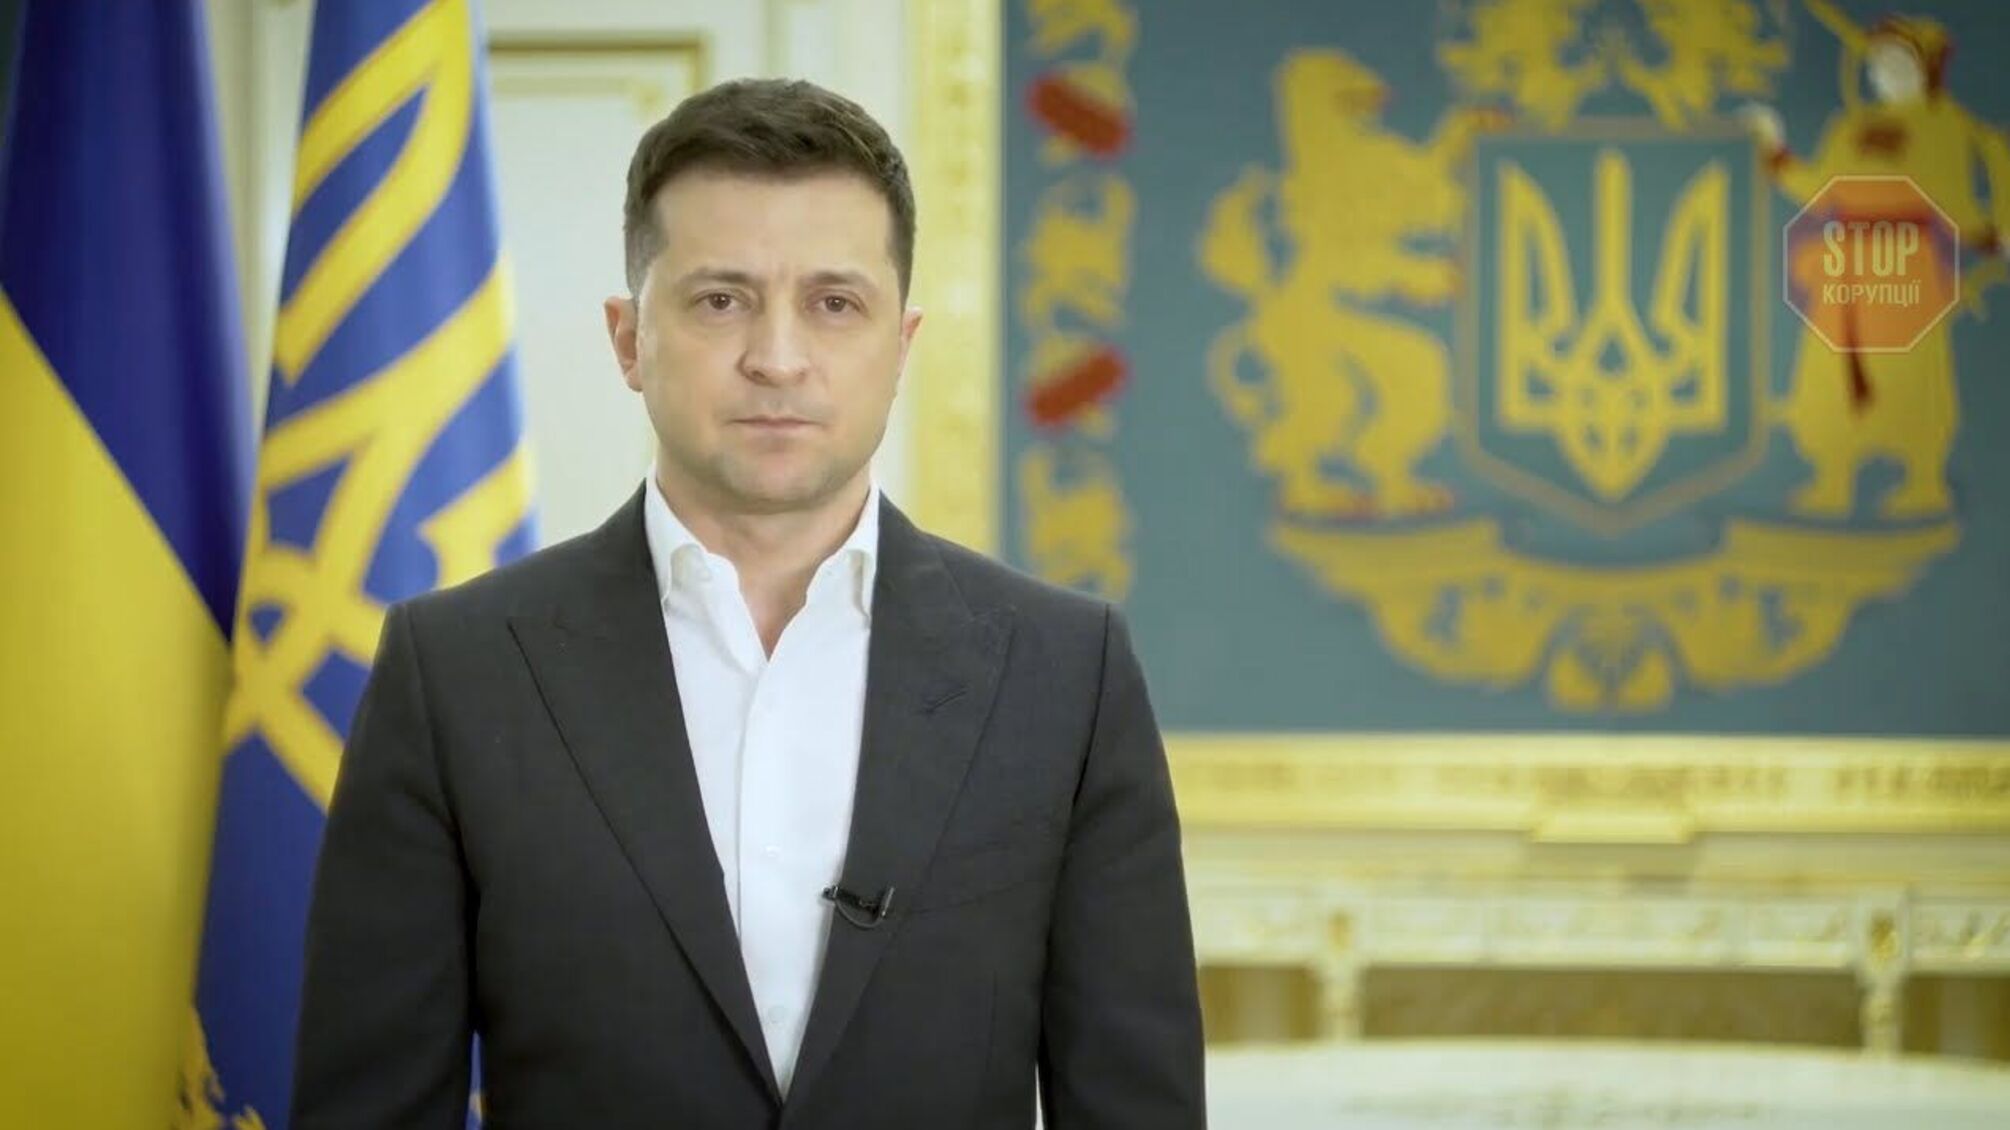 Опрос: Половина украинцев не поддерживает выдвижение Зеленского на второй президентский срок